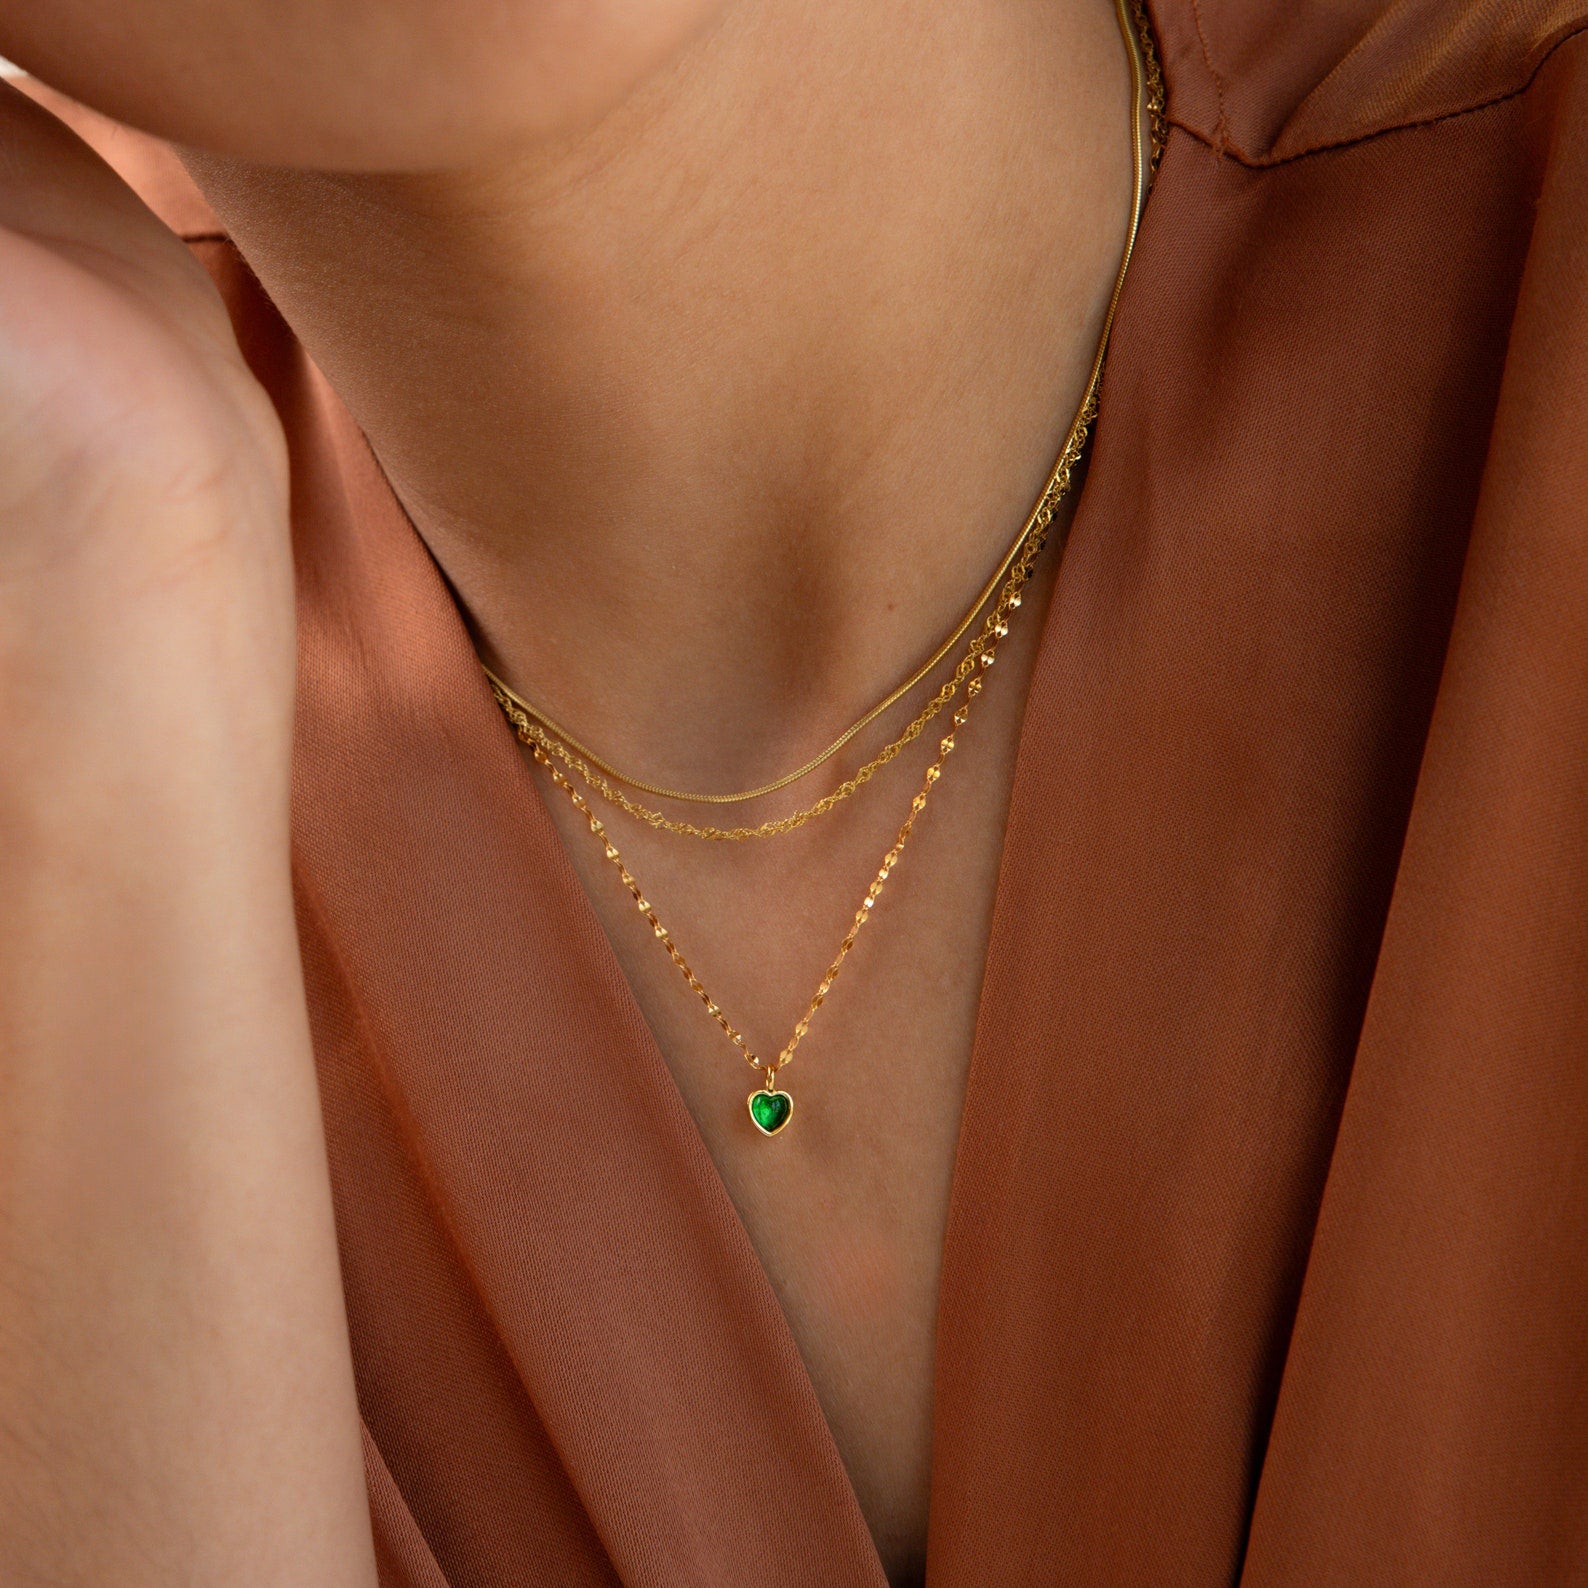 Tiny Jade Heart Necklace